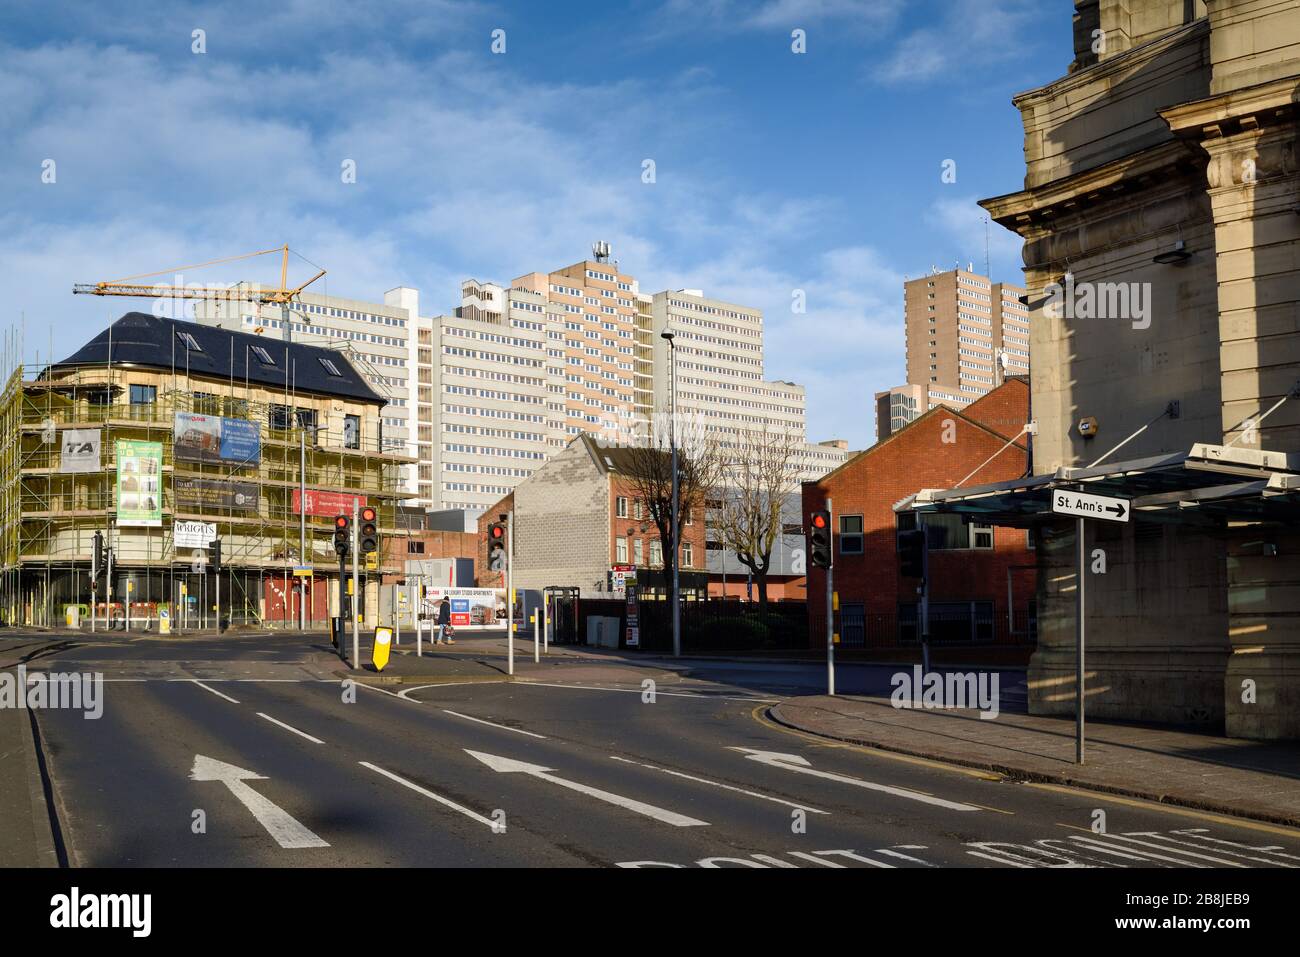 Les rues vides de la ville de Nottingham pendant la pandémie de coronavirus, Royaume-Uni. Banque D'Images